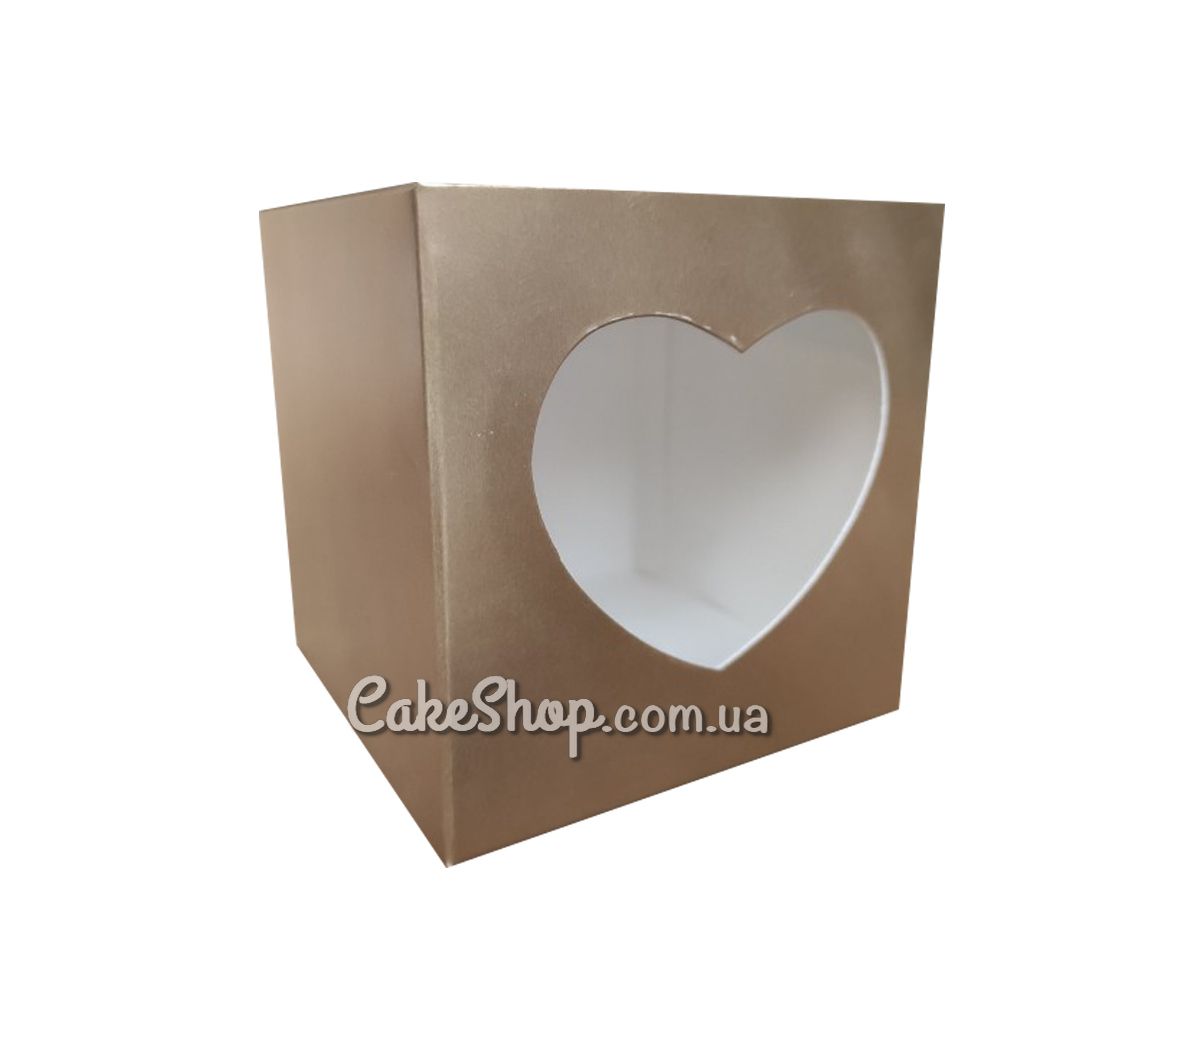 ⋗ Коробка для 1 кекса с сердцем Золото, 10х10х9 см купить в Украине ➛ CakeShop.com.ua, фото